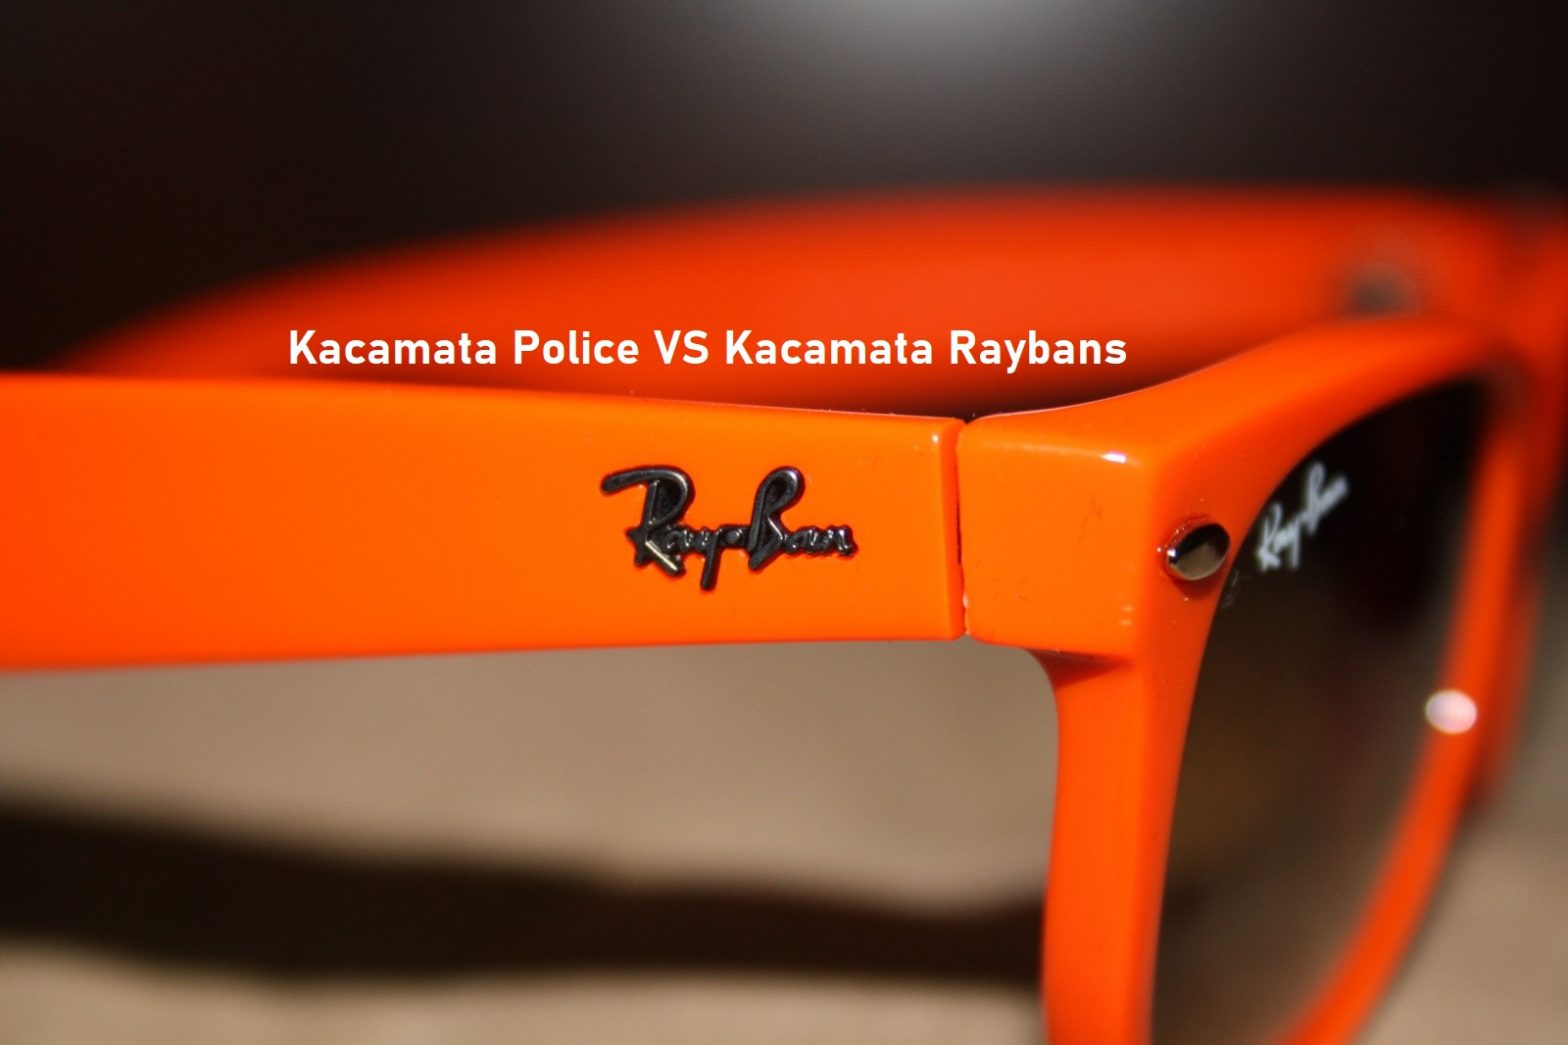 Kacamata Police VS Kacamata Raybans